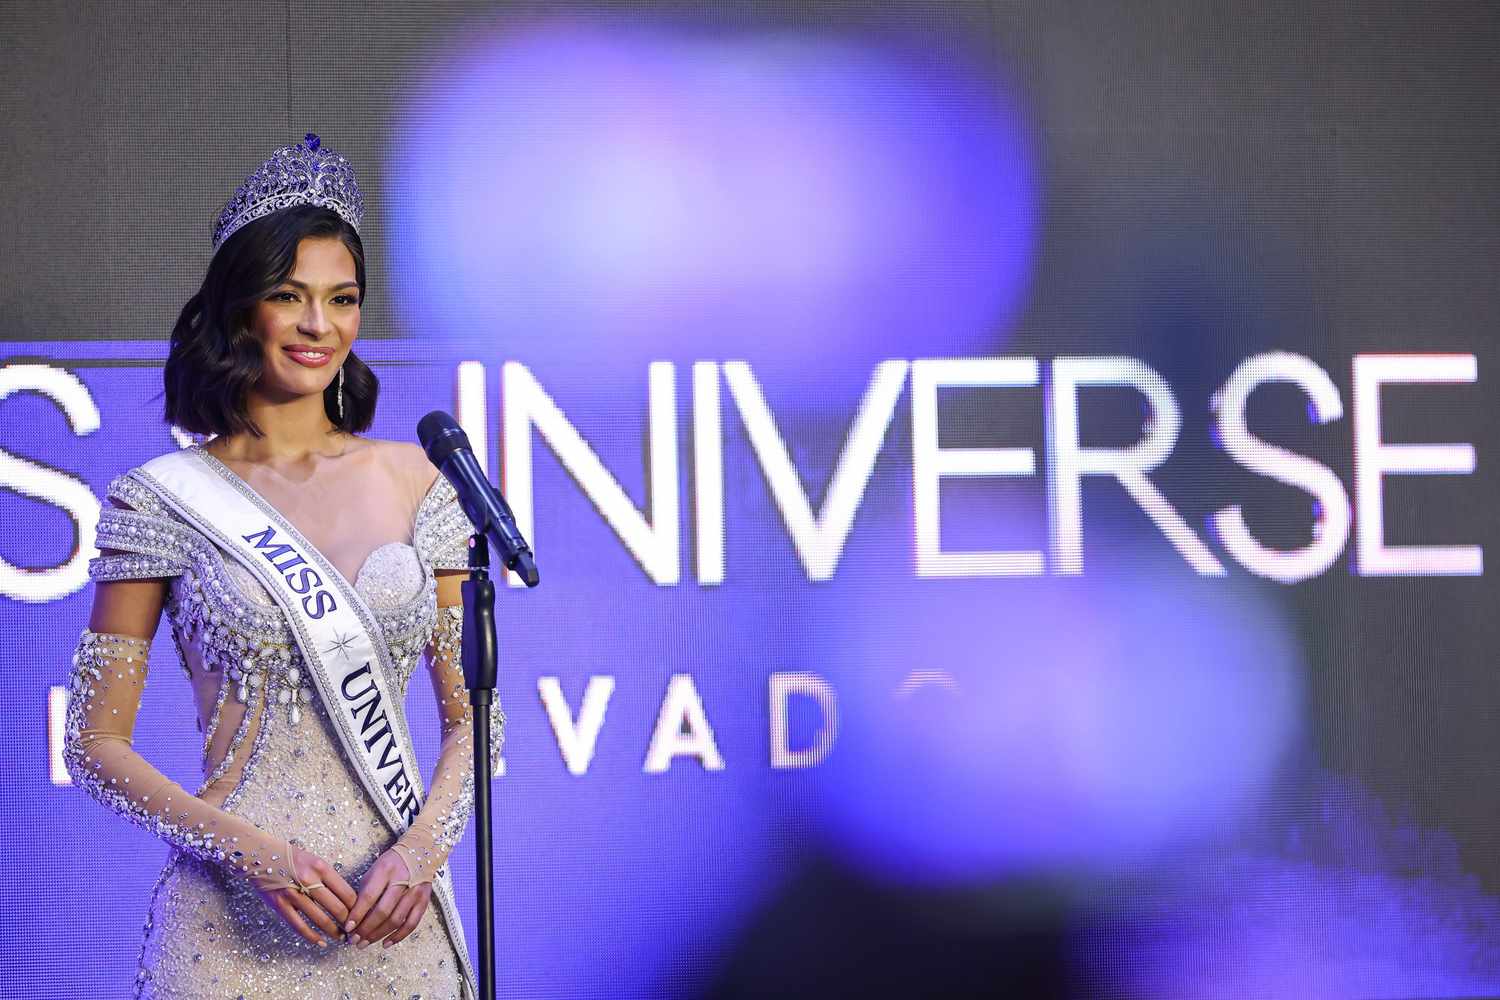 Sheynnis Palacios al natural: así luce la ganadora del Miss Universo 2023 sin maquillaje